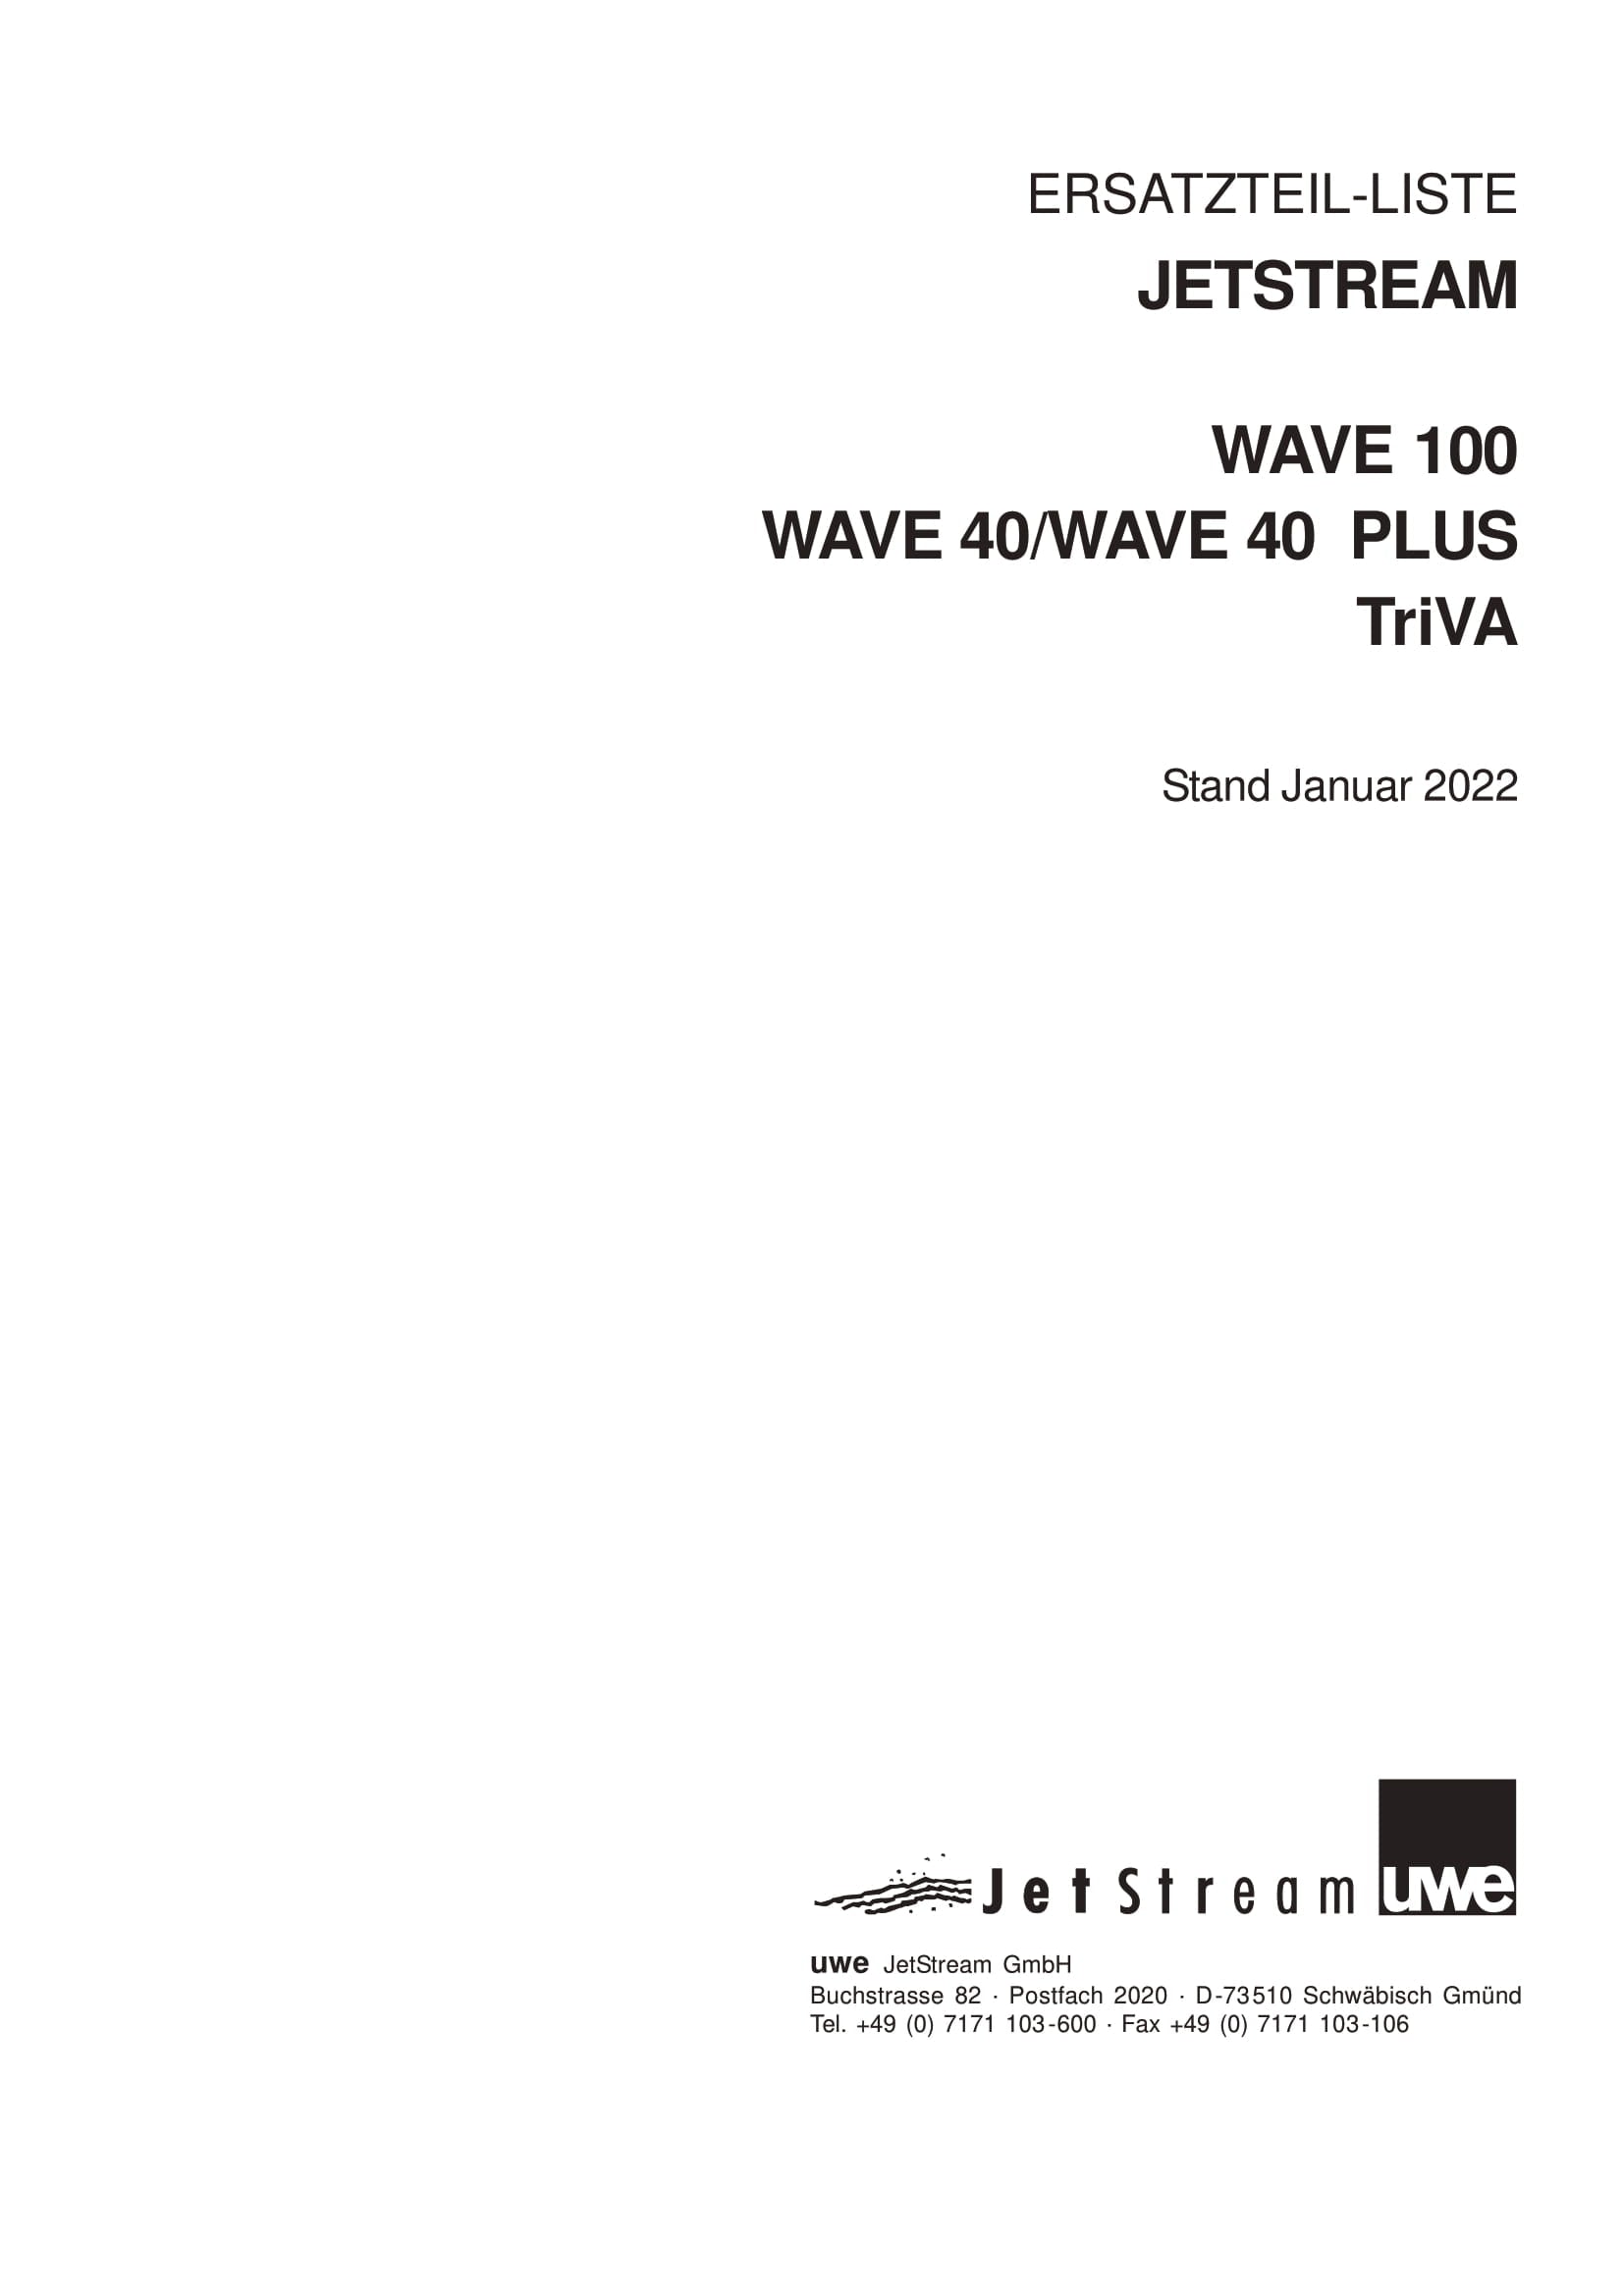 Onderdelen UWE Triva, Wave 100, Wave 40 en Wave 40 plus